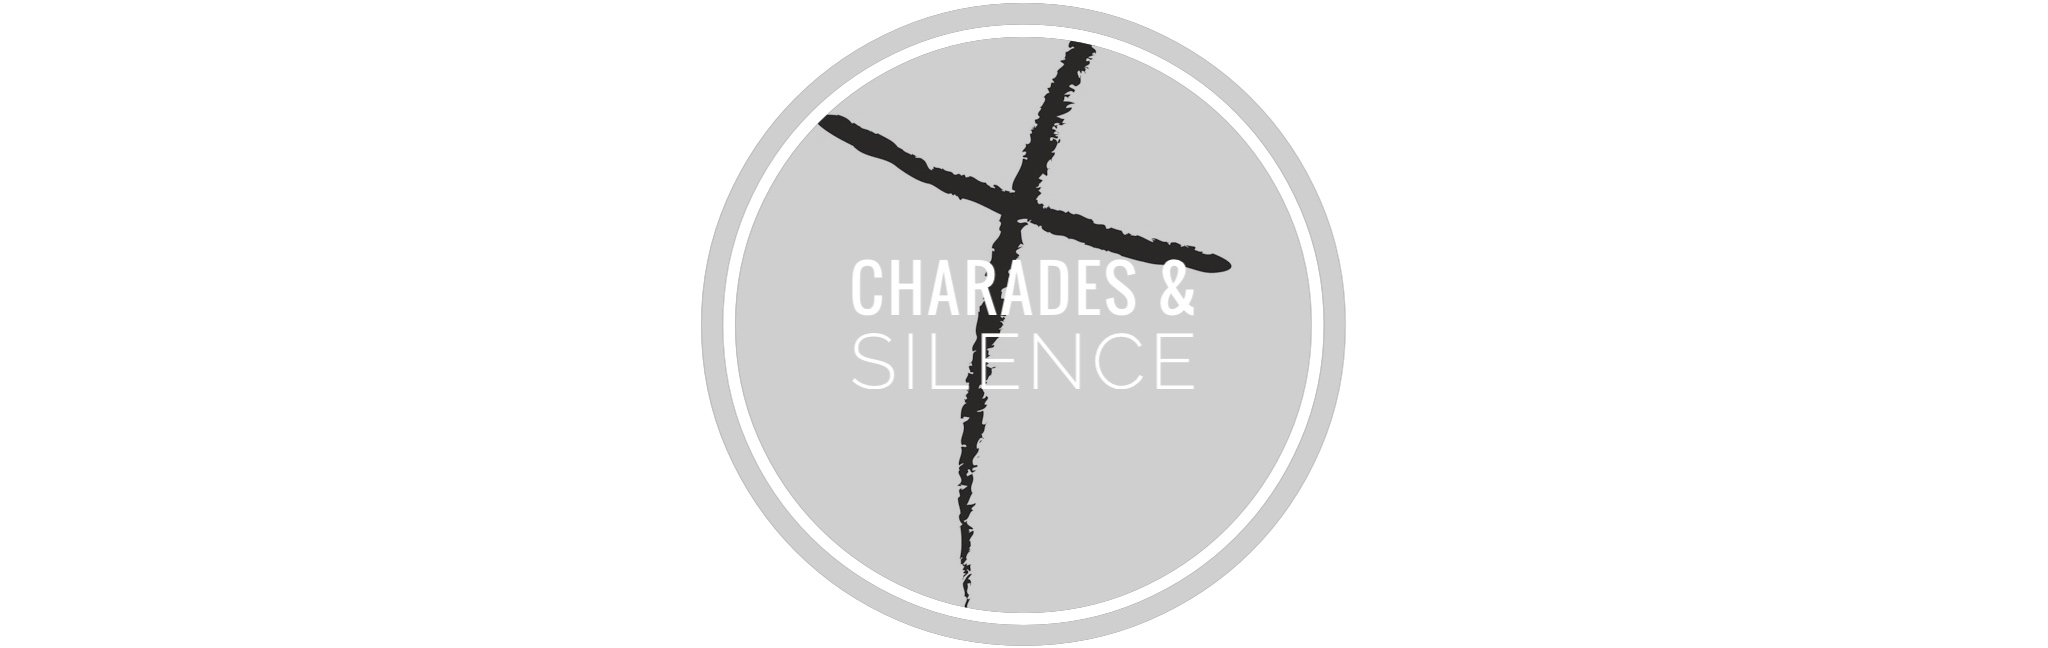 Charades & Silence